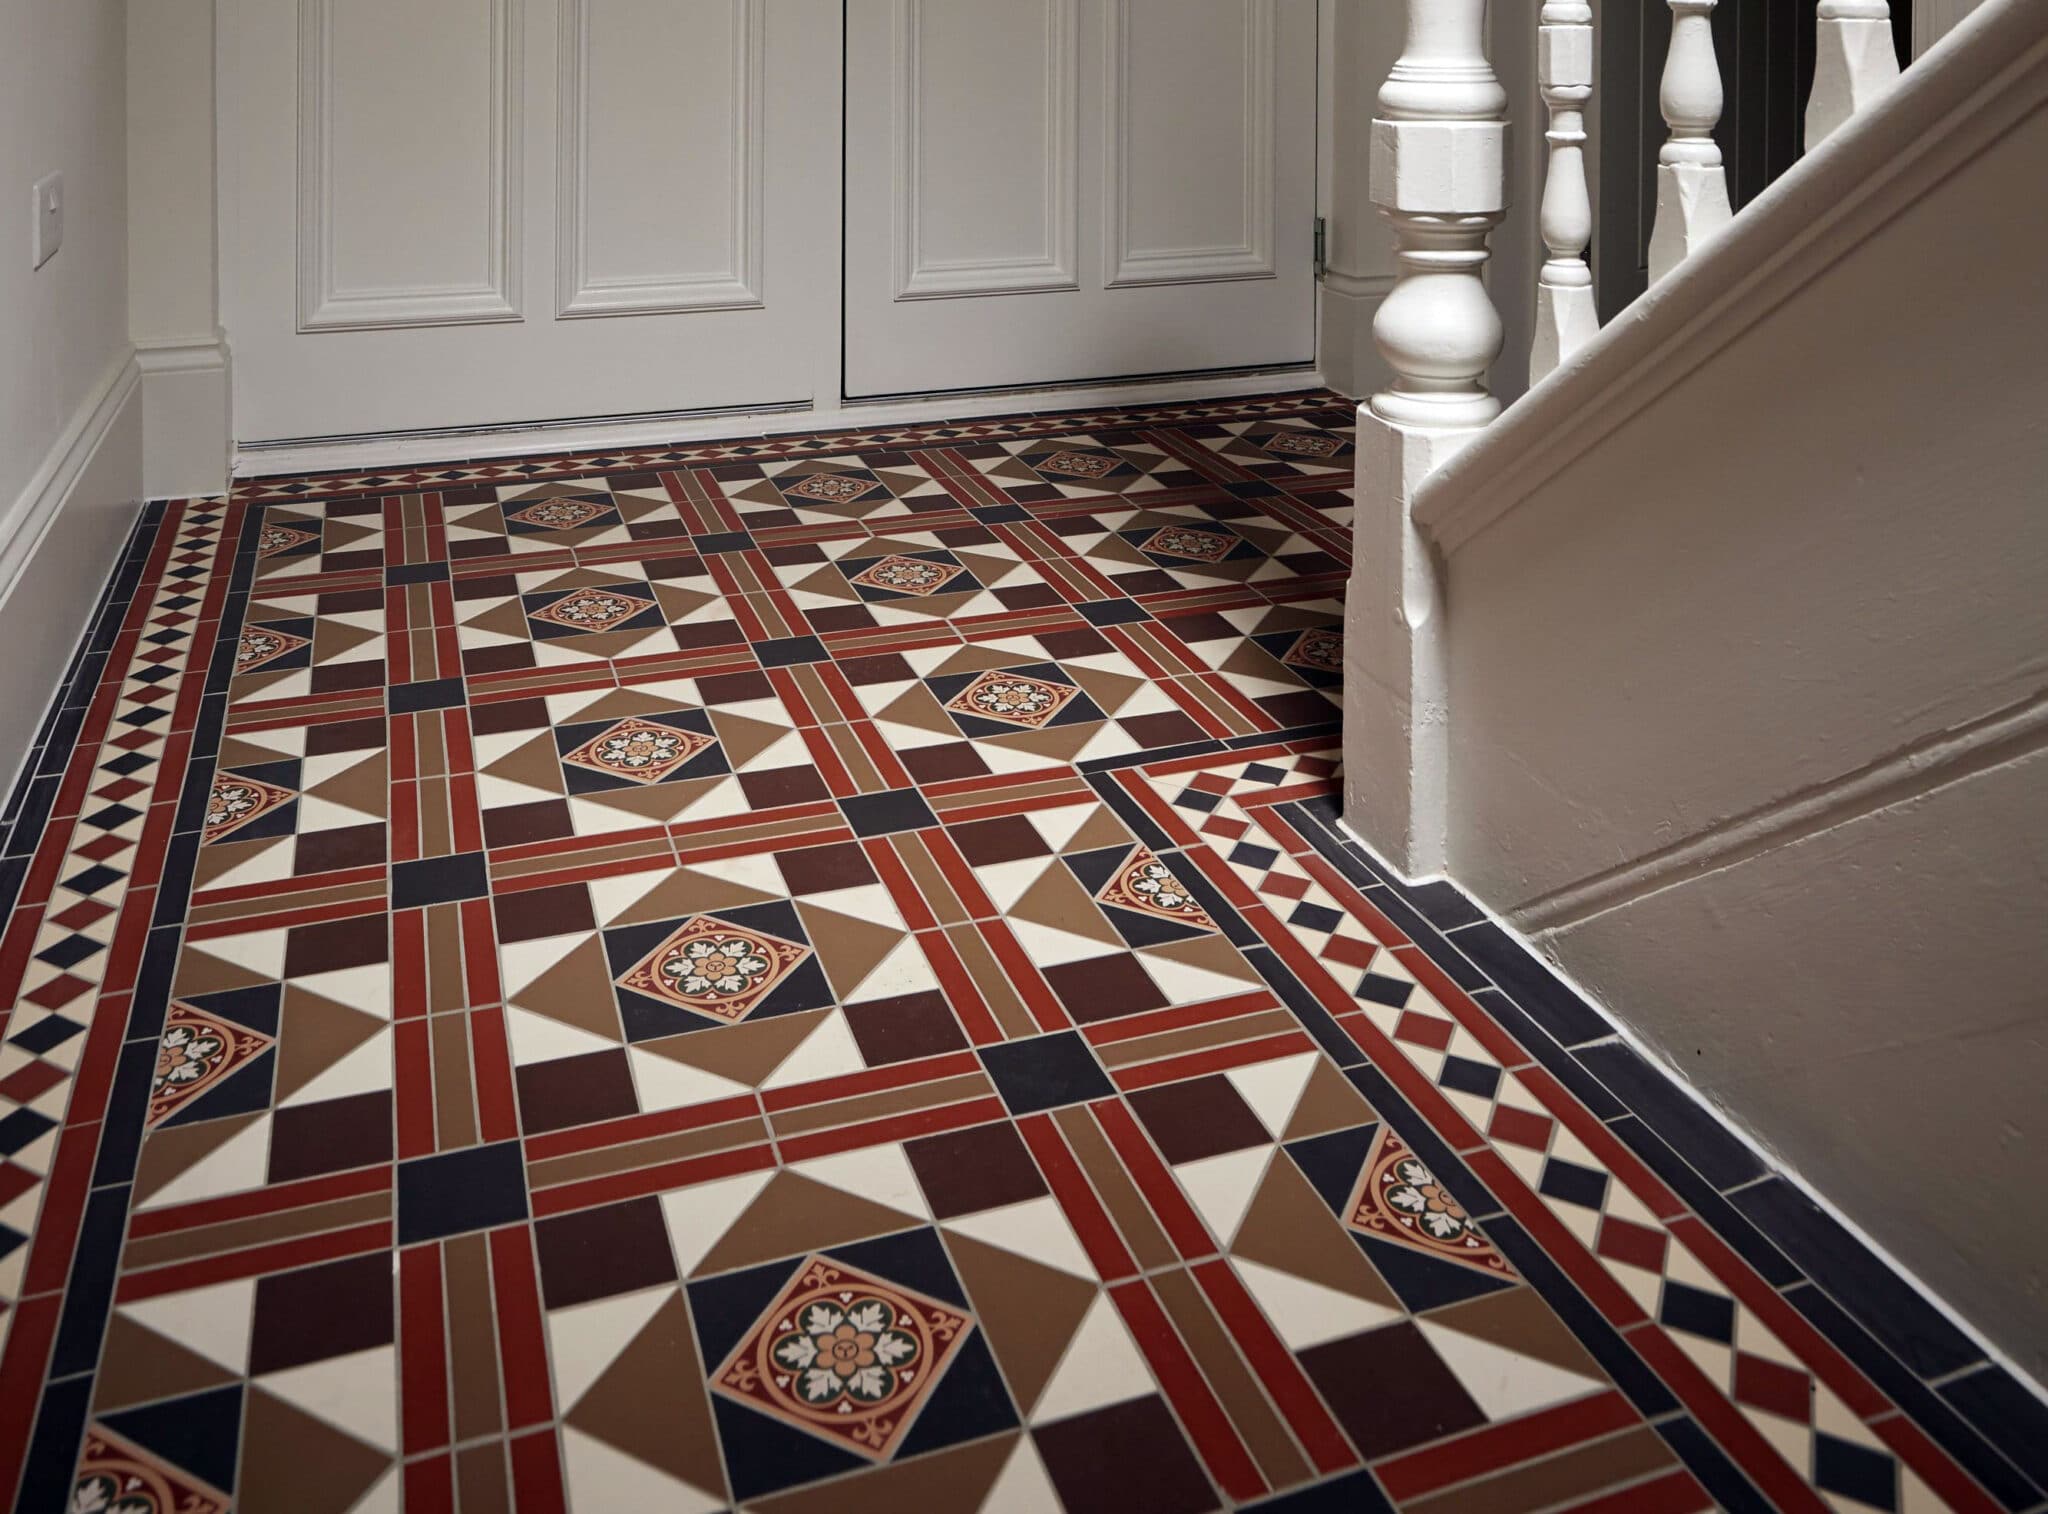 Olde English Stevenson Pattern Floor Tile Per M2 Target Tiles